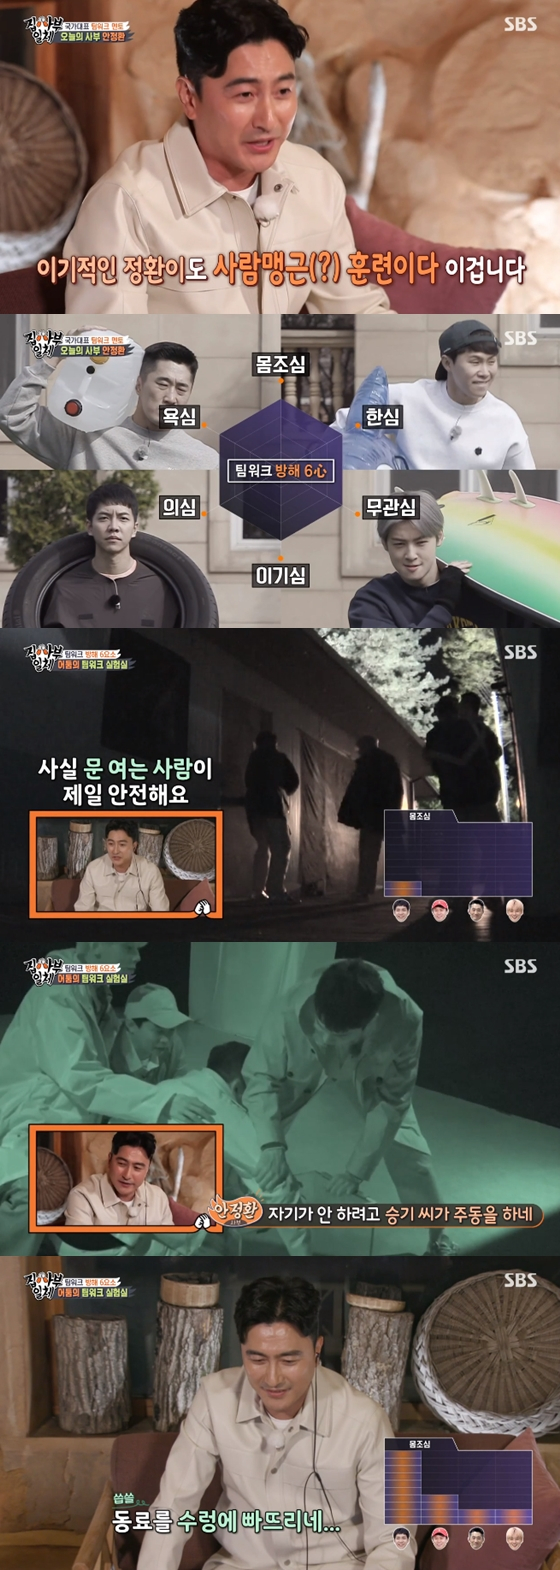 /사진=SBS'집사부일체' 방송 화면 캡처 